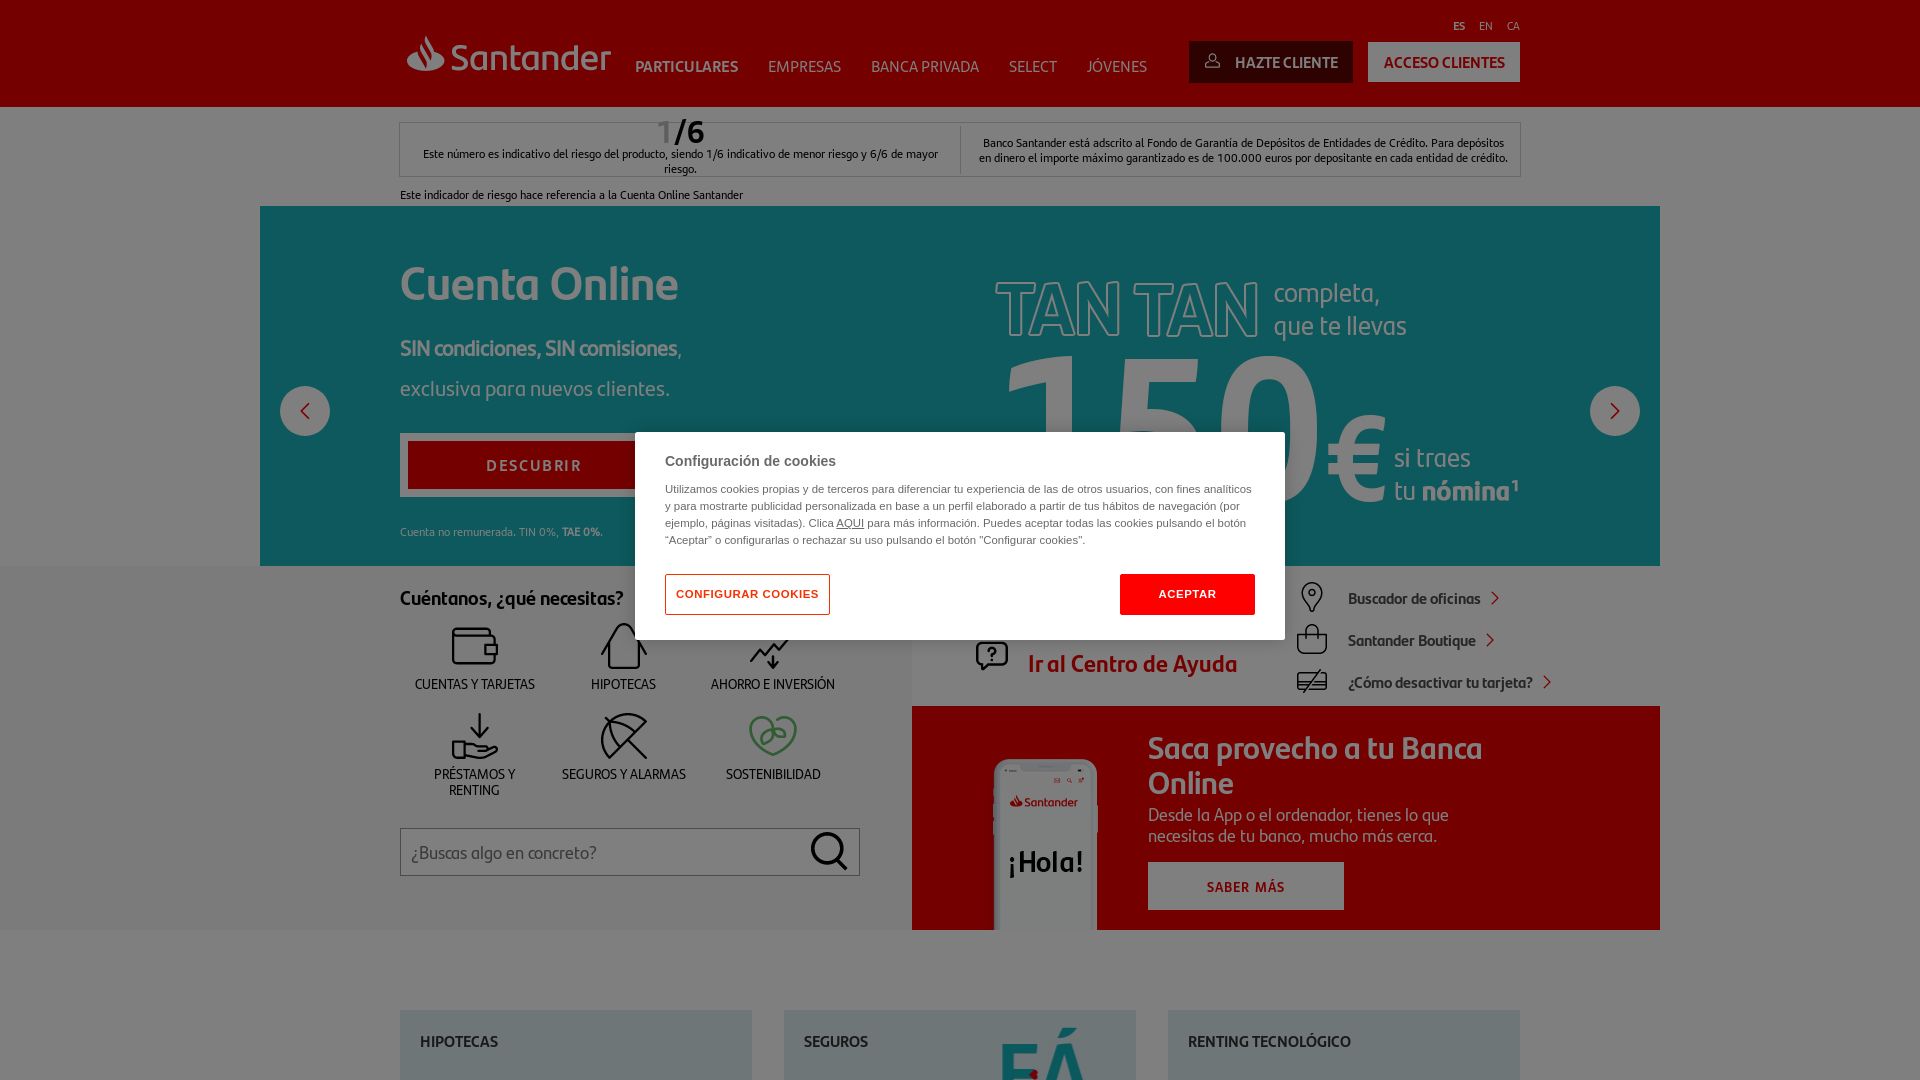 Website status bancosantander.es is   ONLINE